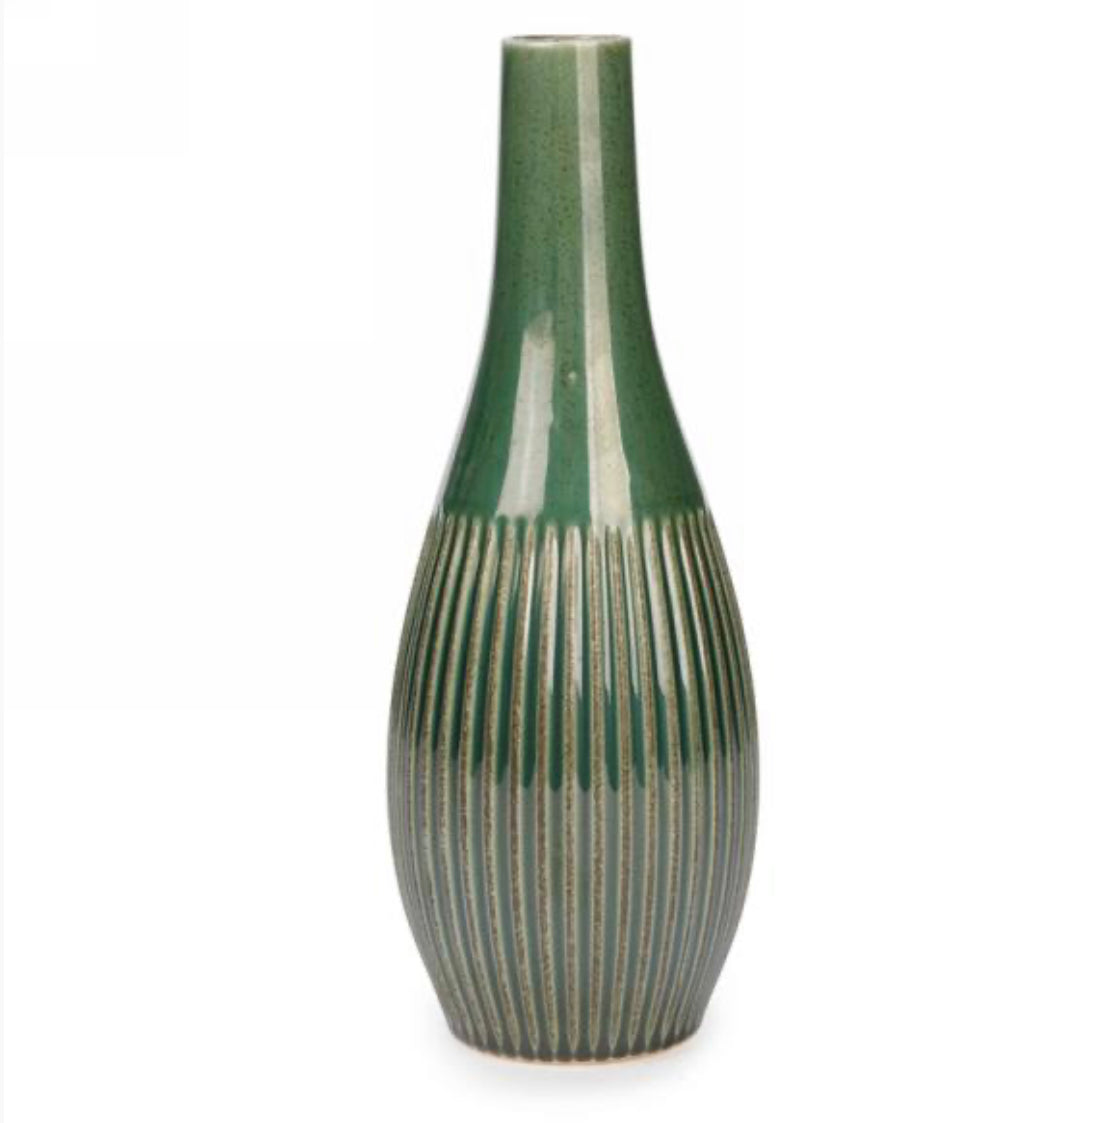 Green ribbed ceramic vase